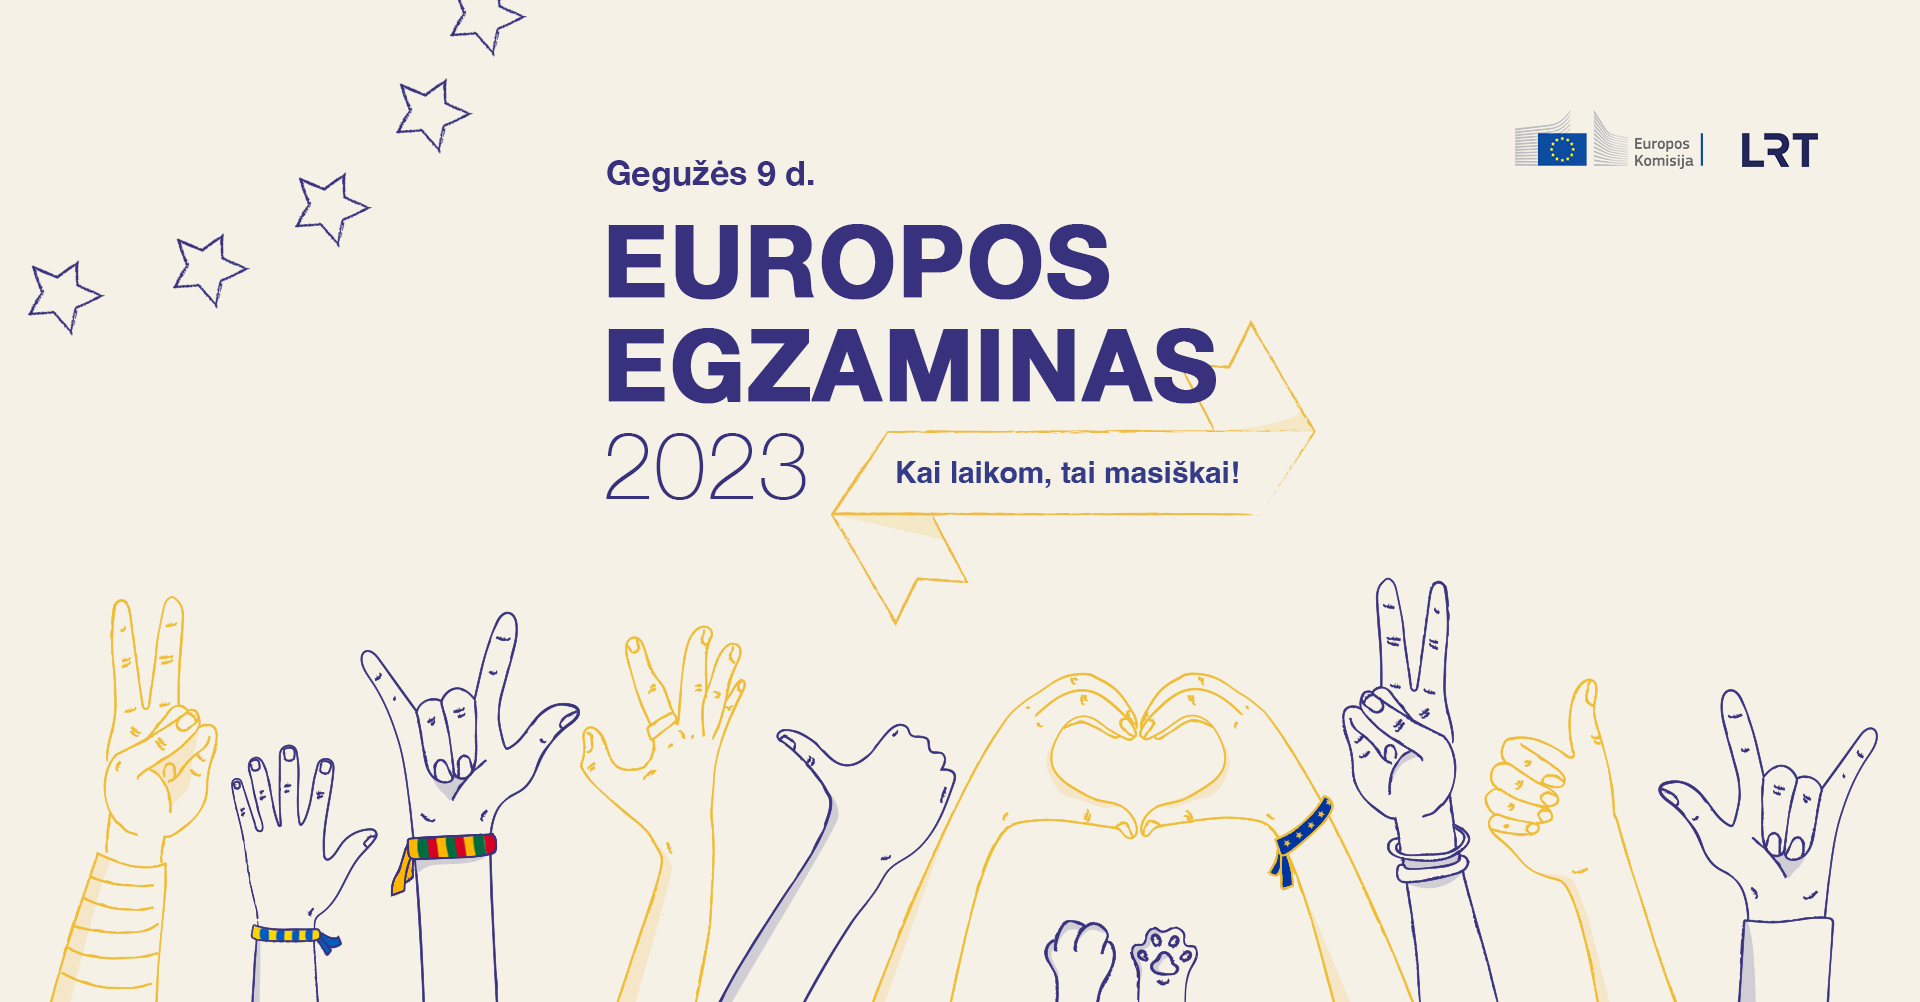 Europos egzaminas 2023